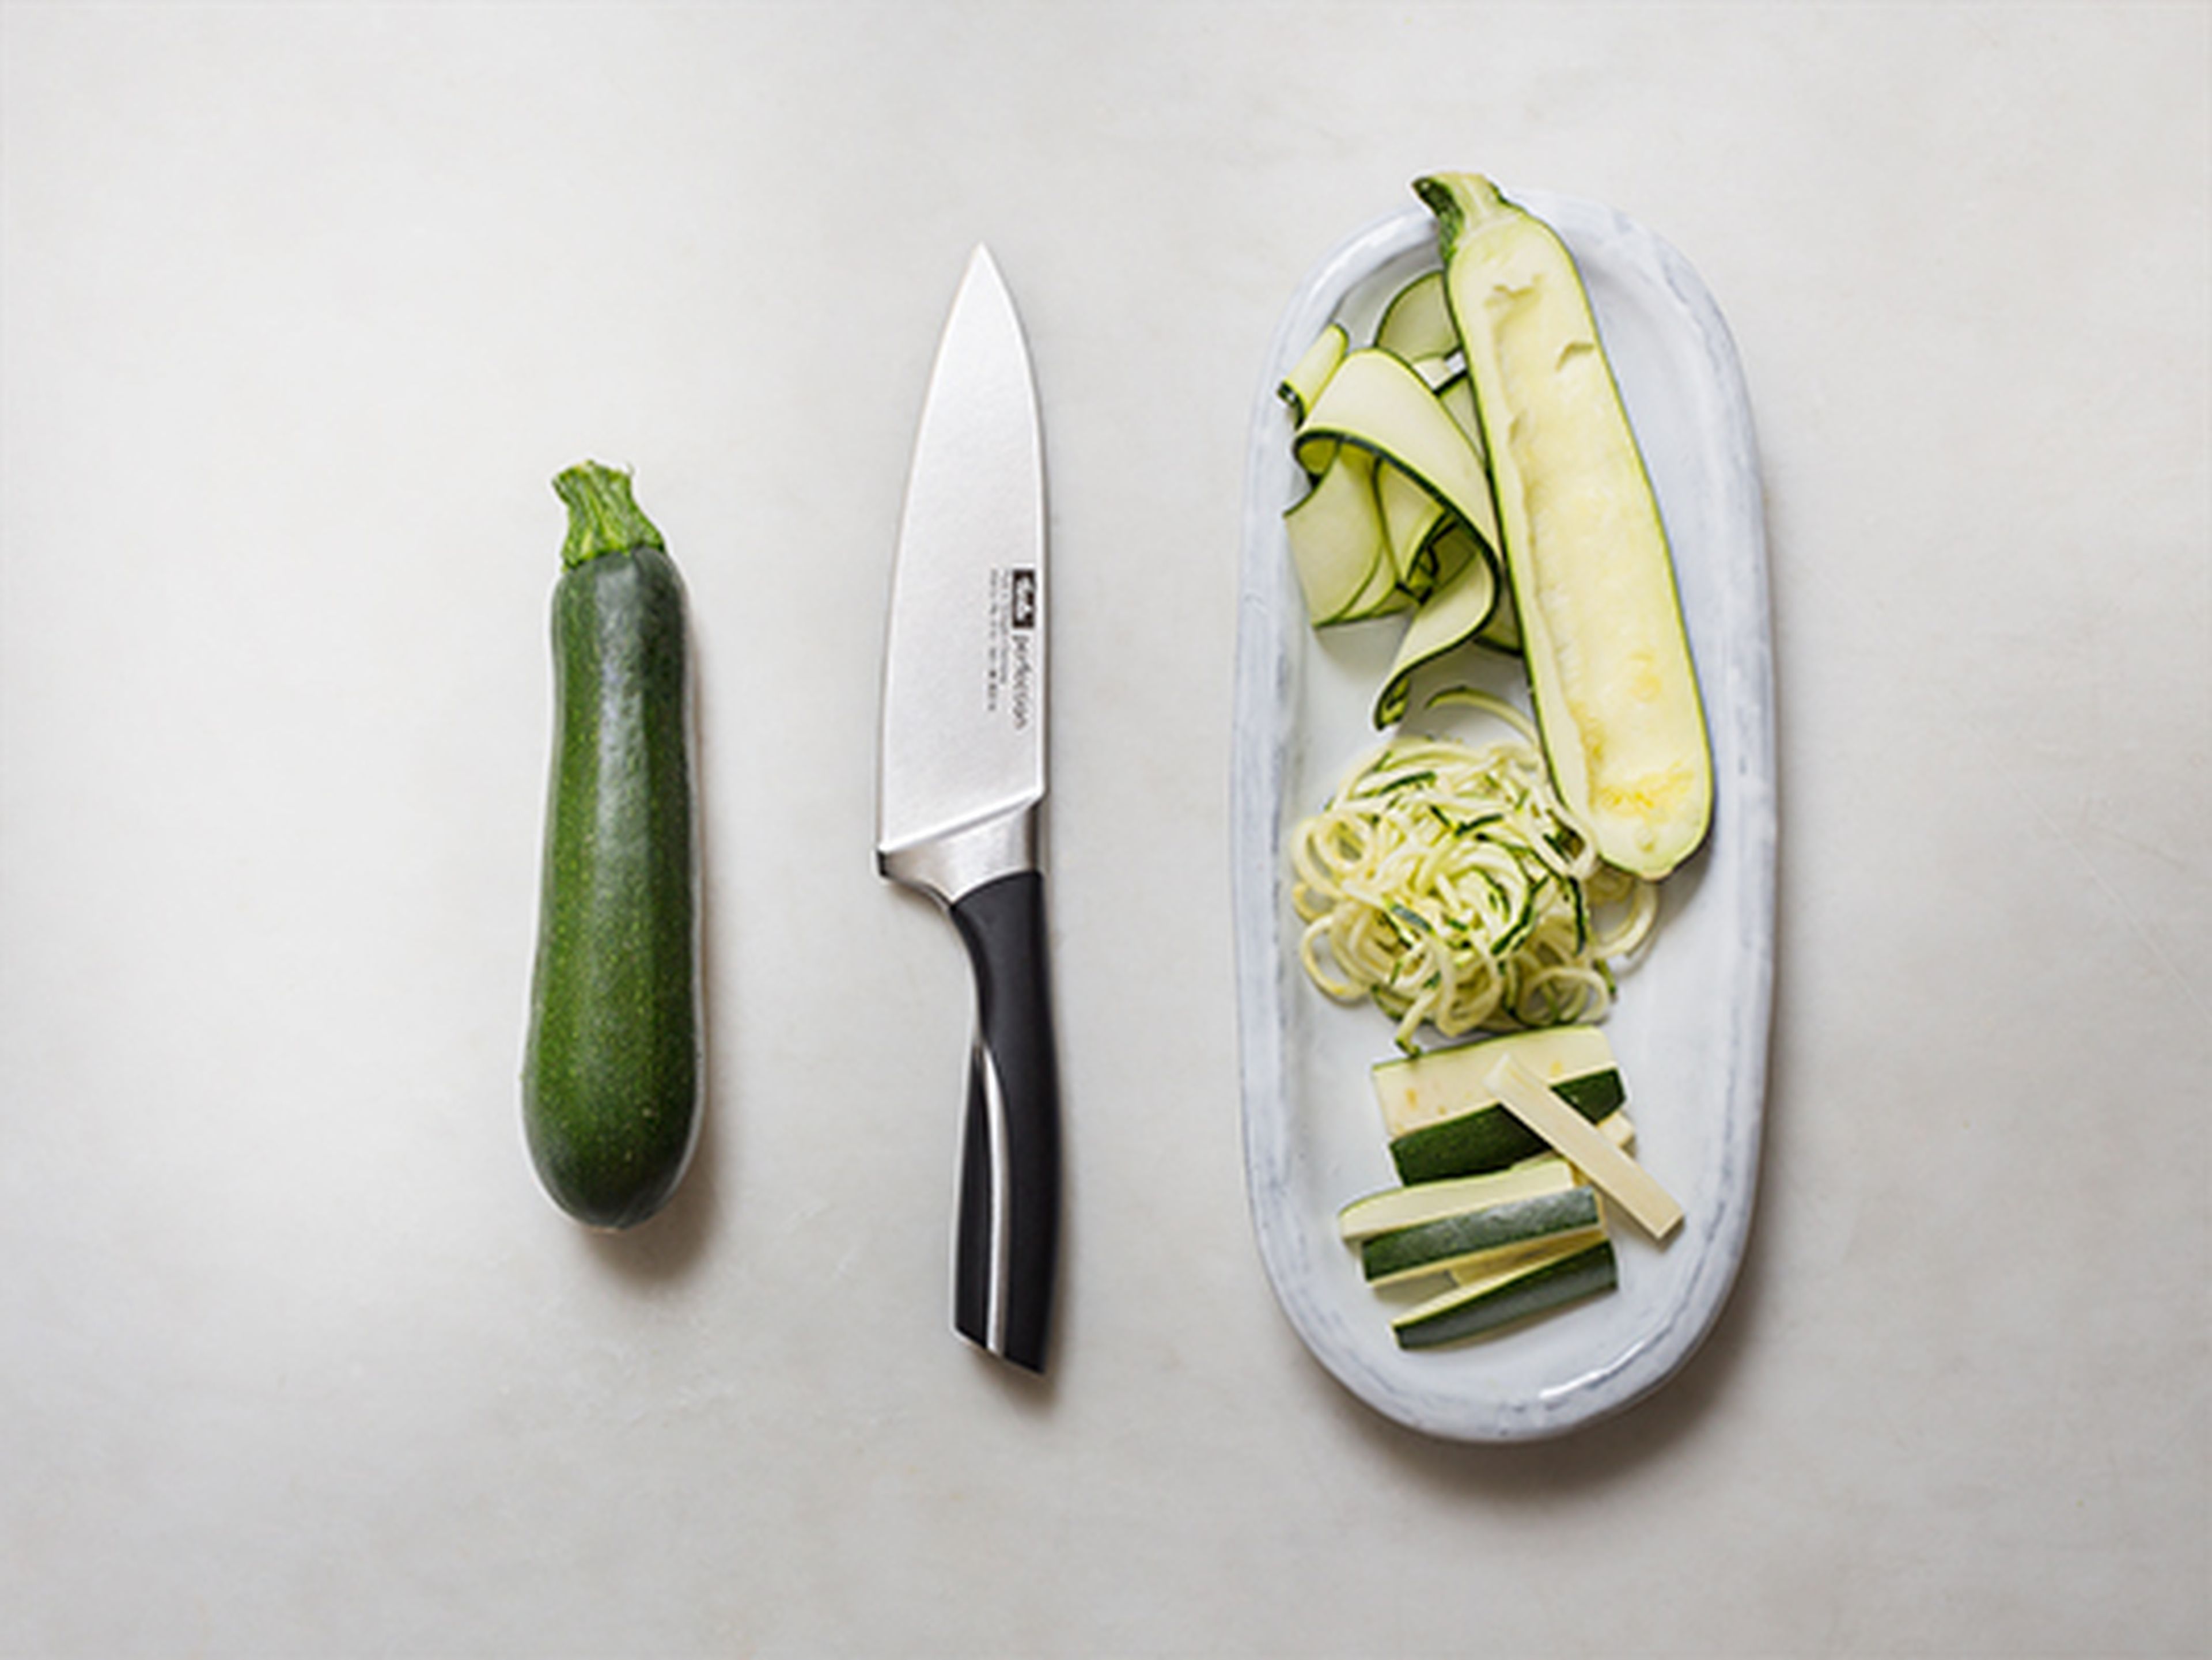 How to prepare zucchini